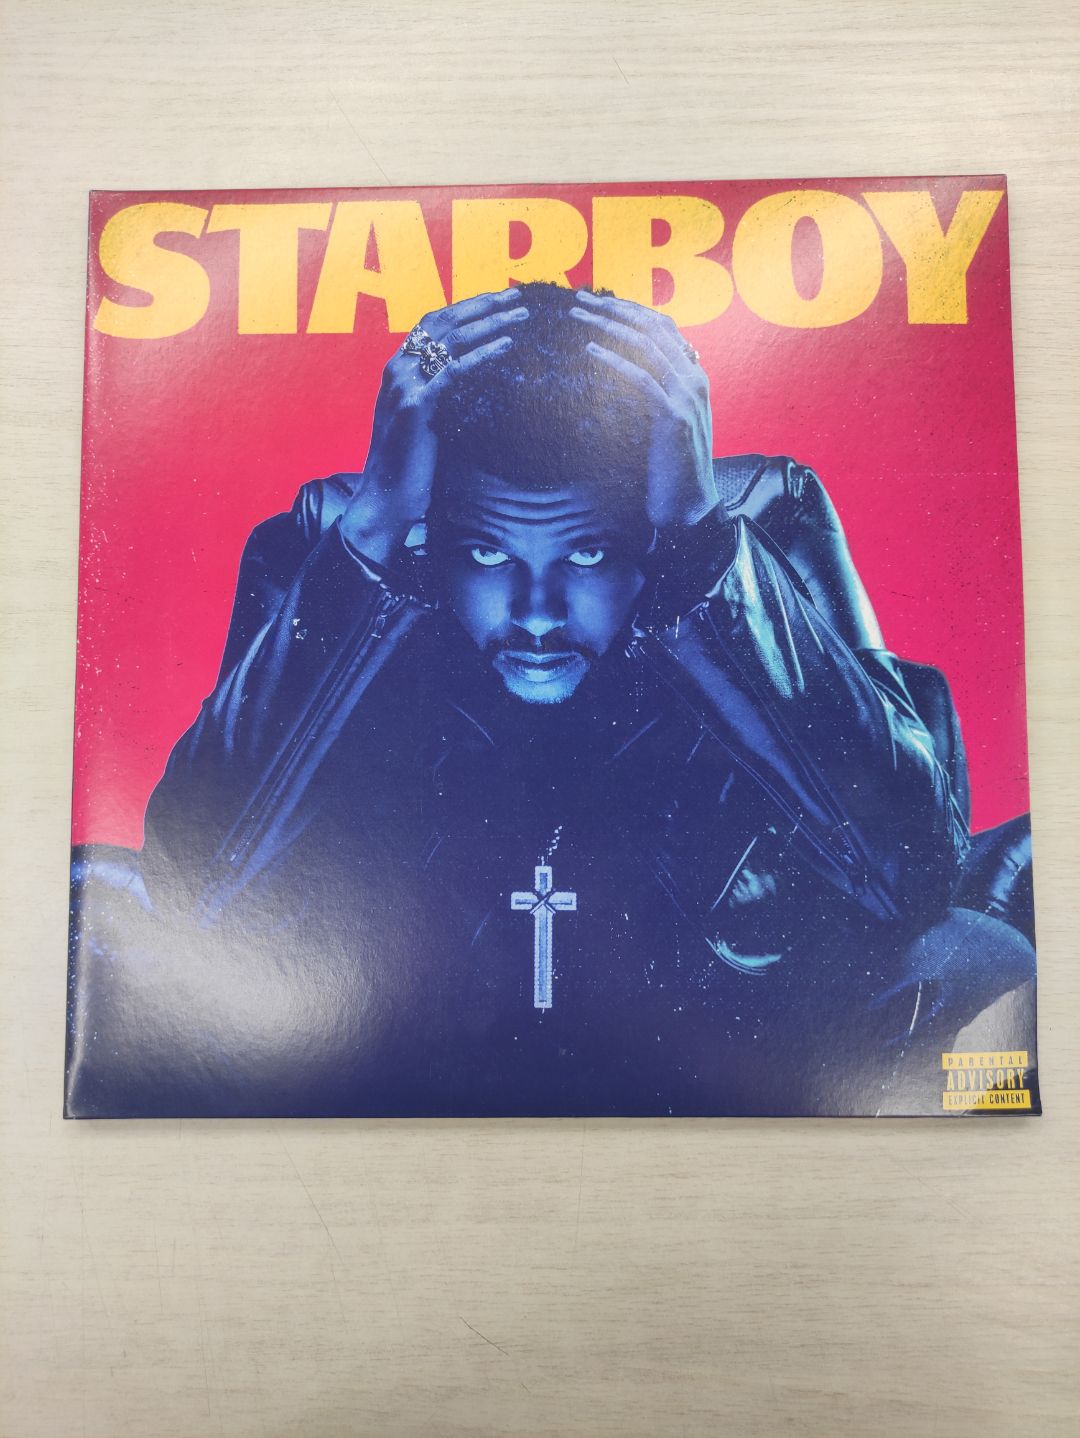 Виниловая пластинка The Weeknd, Starboy (0602557227512) хорошее состояние - фото 2